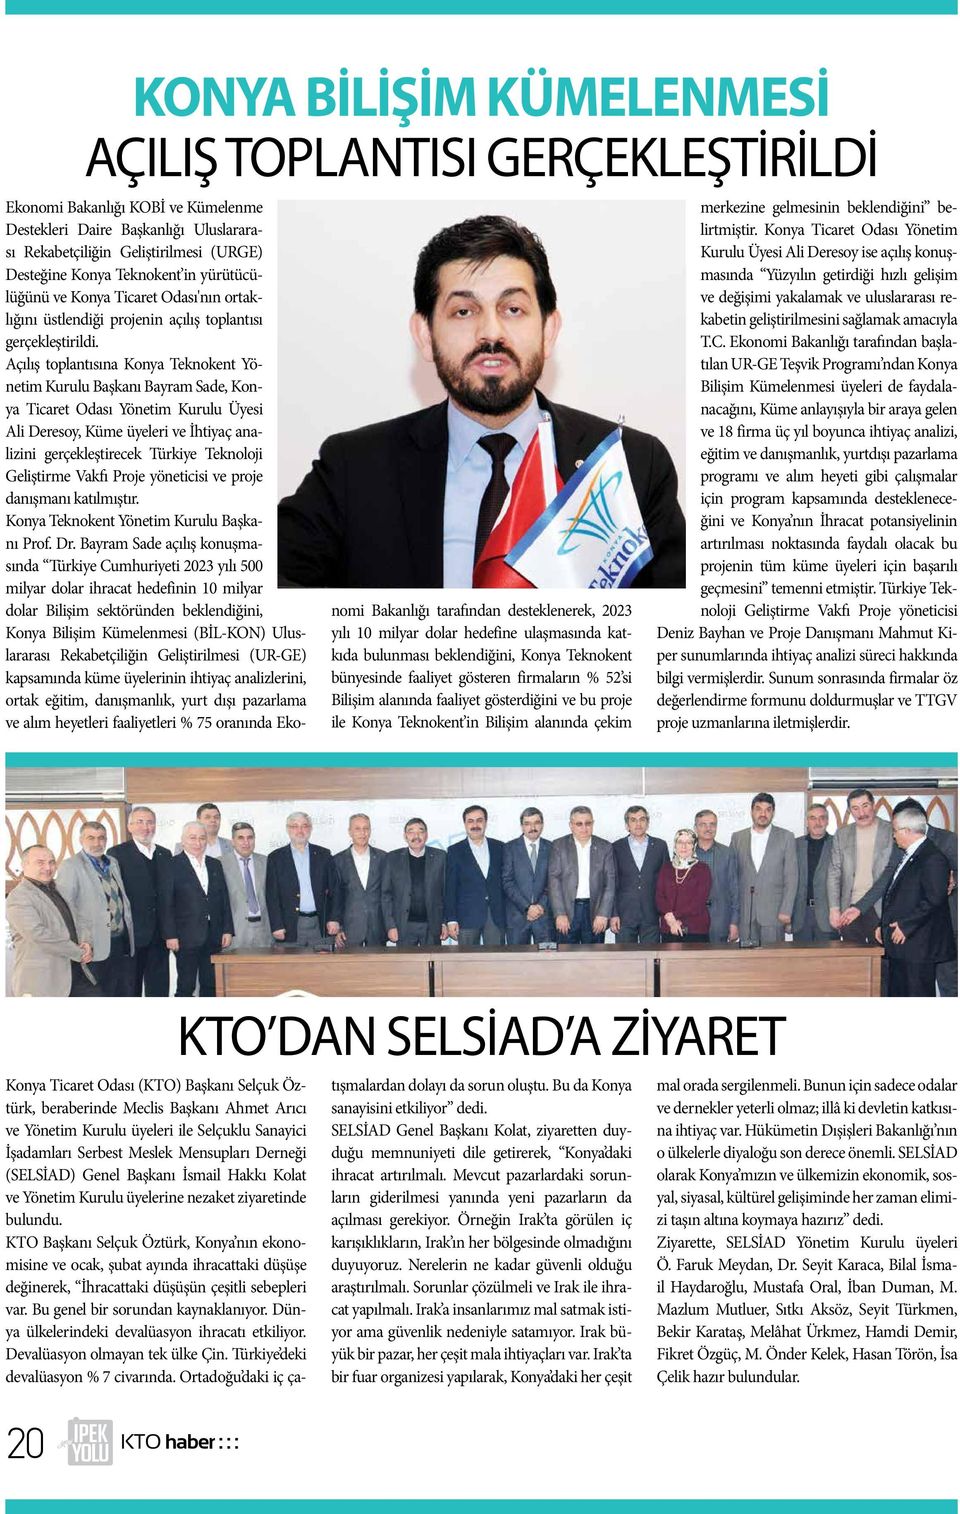 Açılış toplantısına Konya Teknokent Yönetim Kurulu Başkanı Bayram Sade, Konya Ticaret Odası Yönetim Kurulu Üyesi Ali Deresoy, Küme üyeleri ve İhtiyaç analizini gerçekleştirecek Türkiye Teknoloji